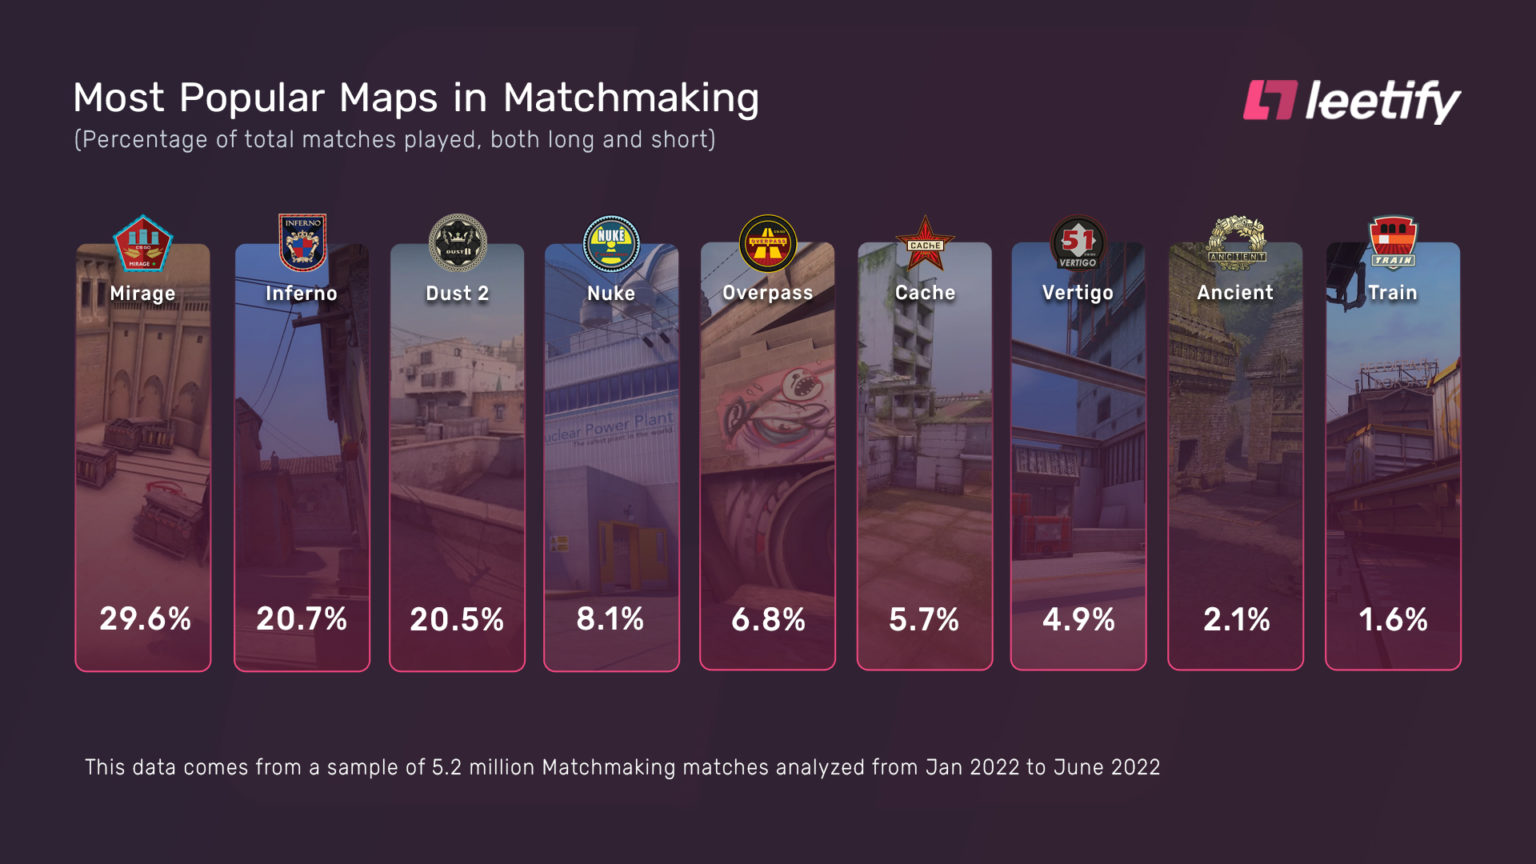 Nuke no CS:GO: veja nomes dos lugares no mapa competitivo do jogo